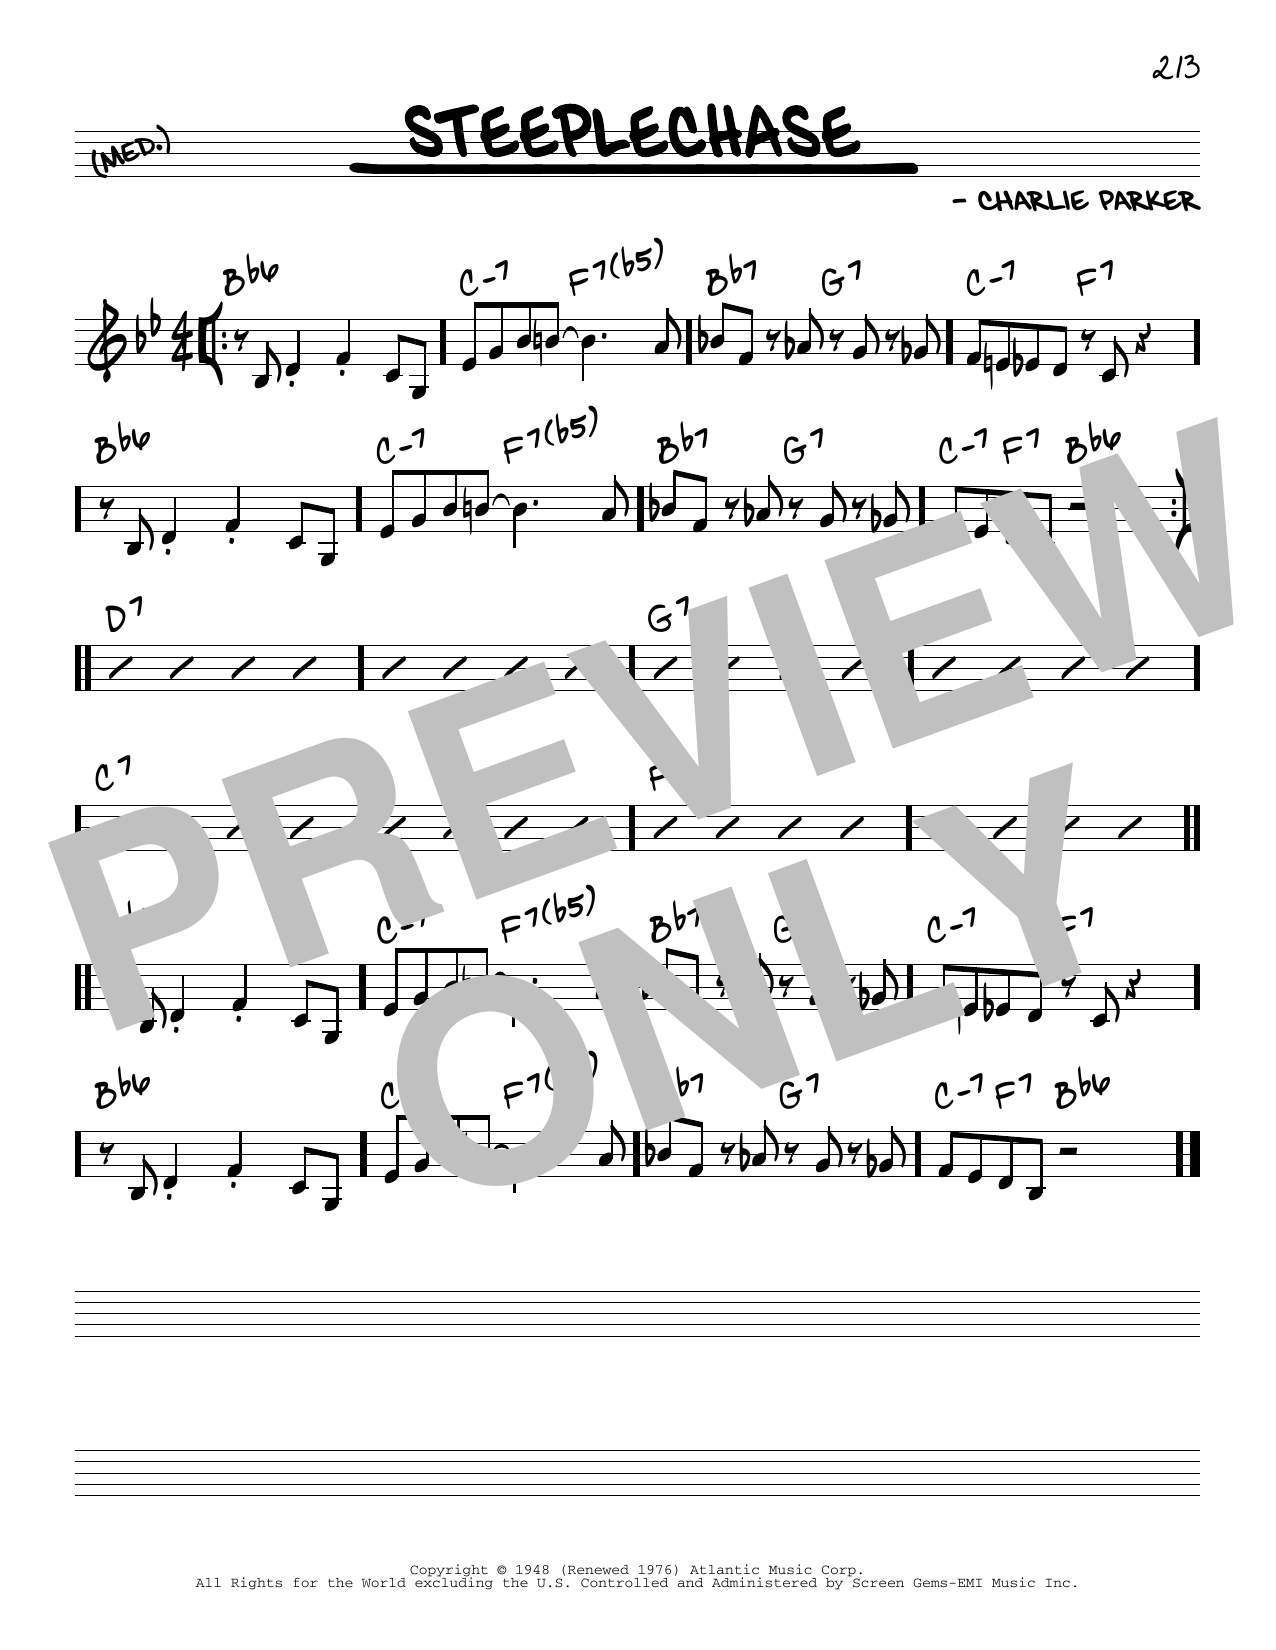 Download Charlie Parker Steeplechase Sheet Music